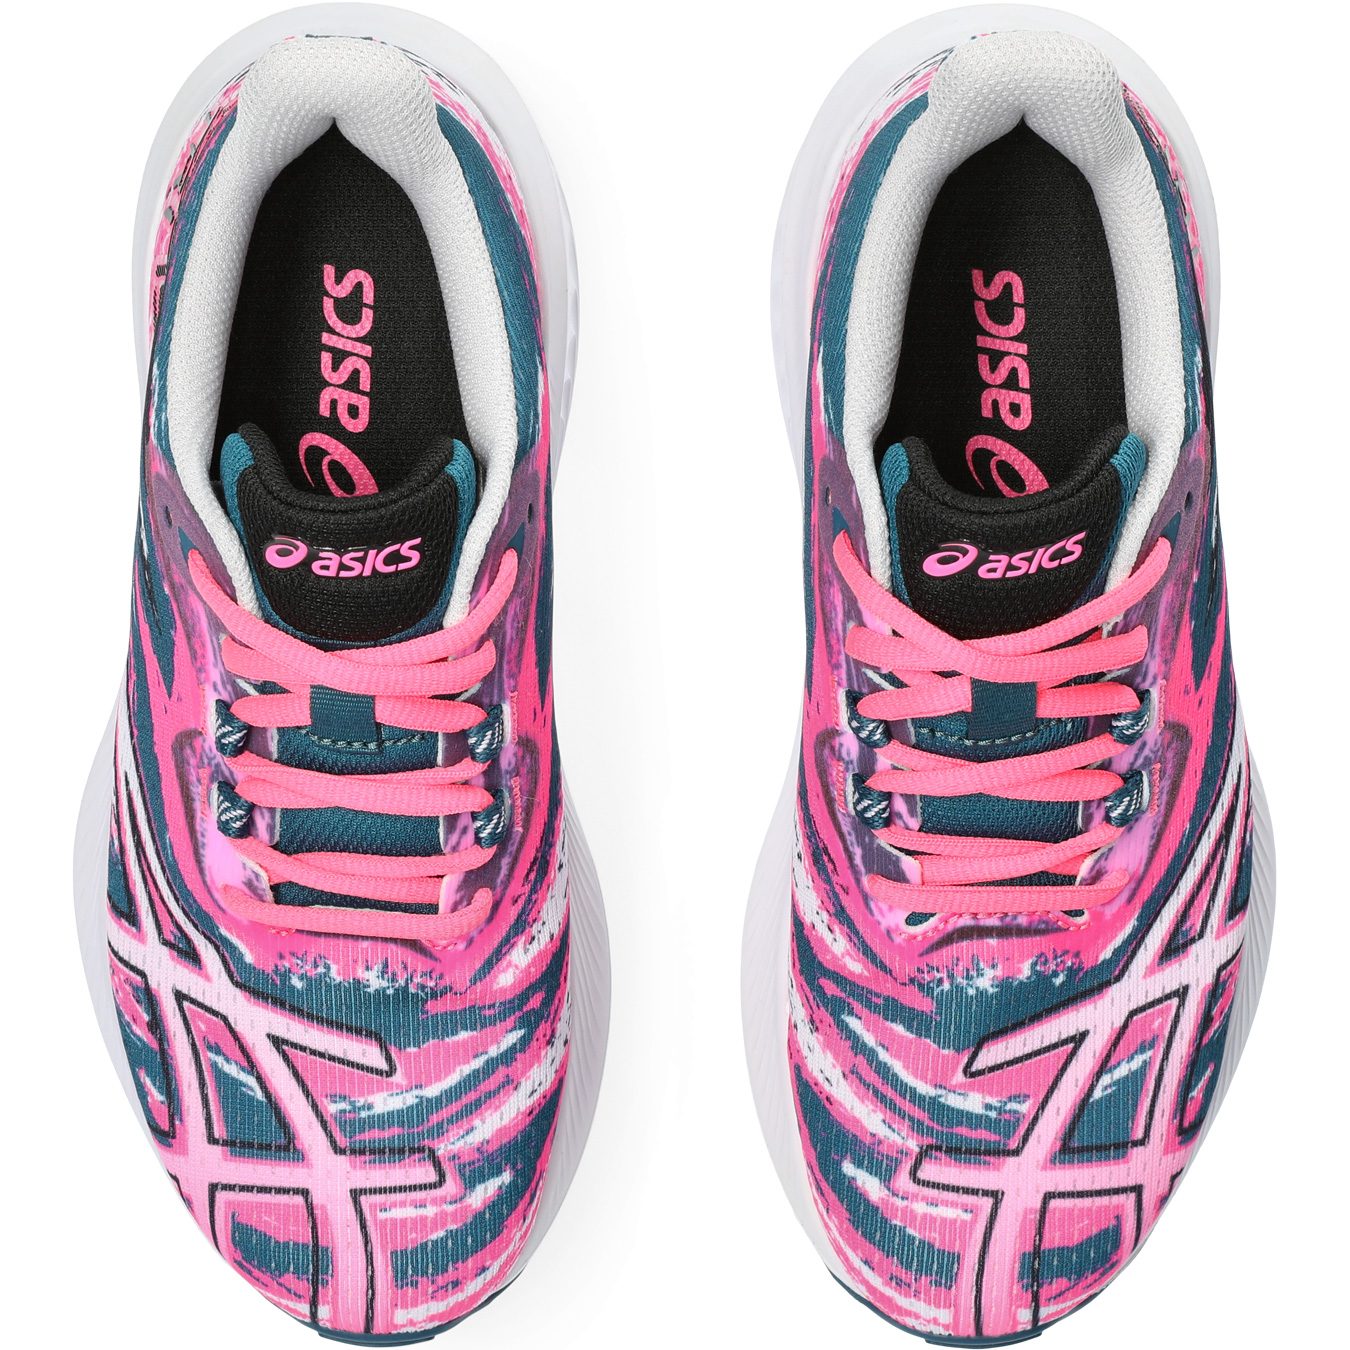 ASICS - Gel-Noosa Shop pink 15 TRI Bittl at Shoes Running Sport GS Kids hot